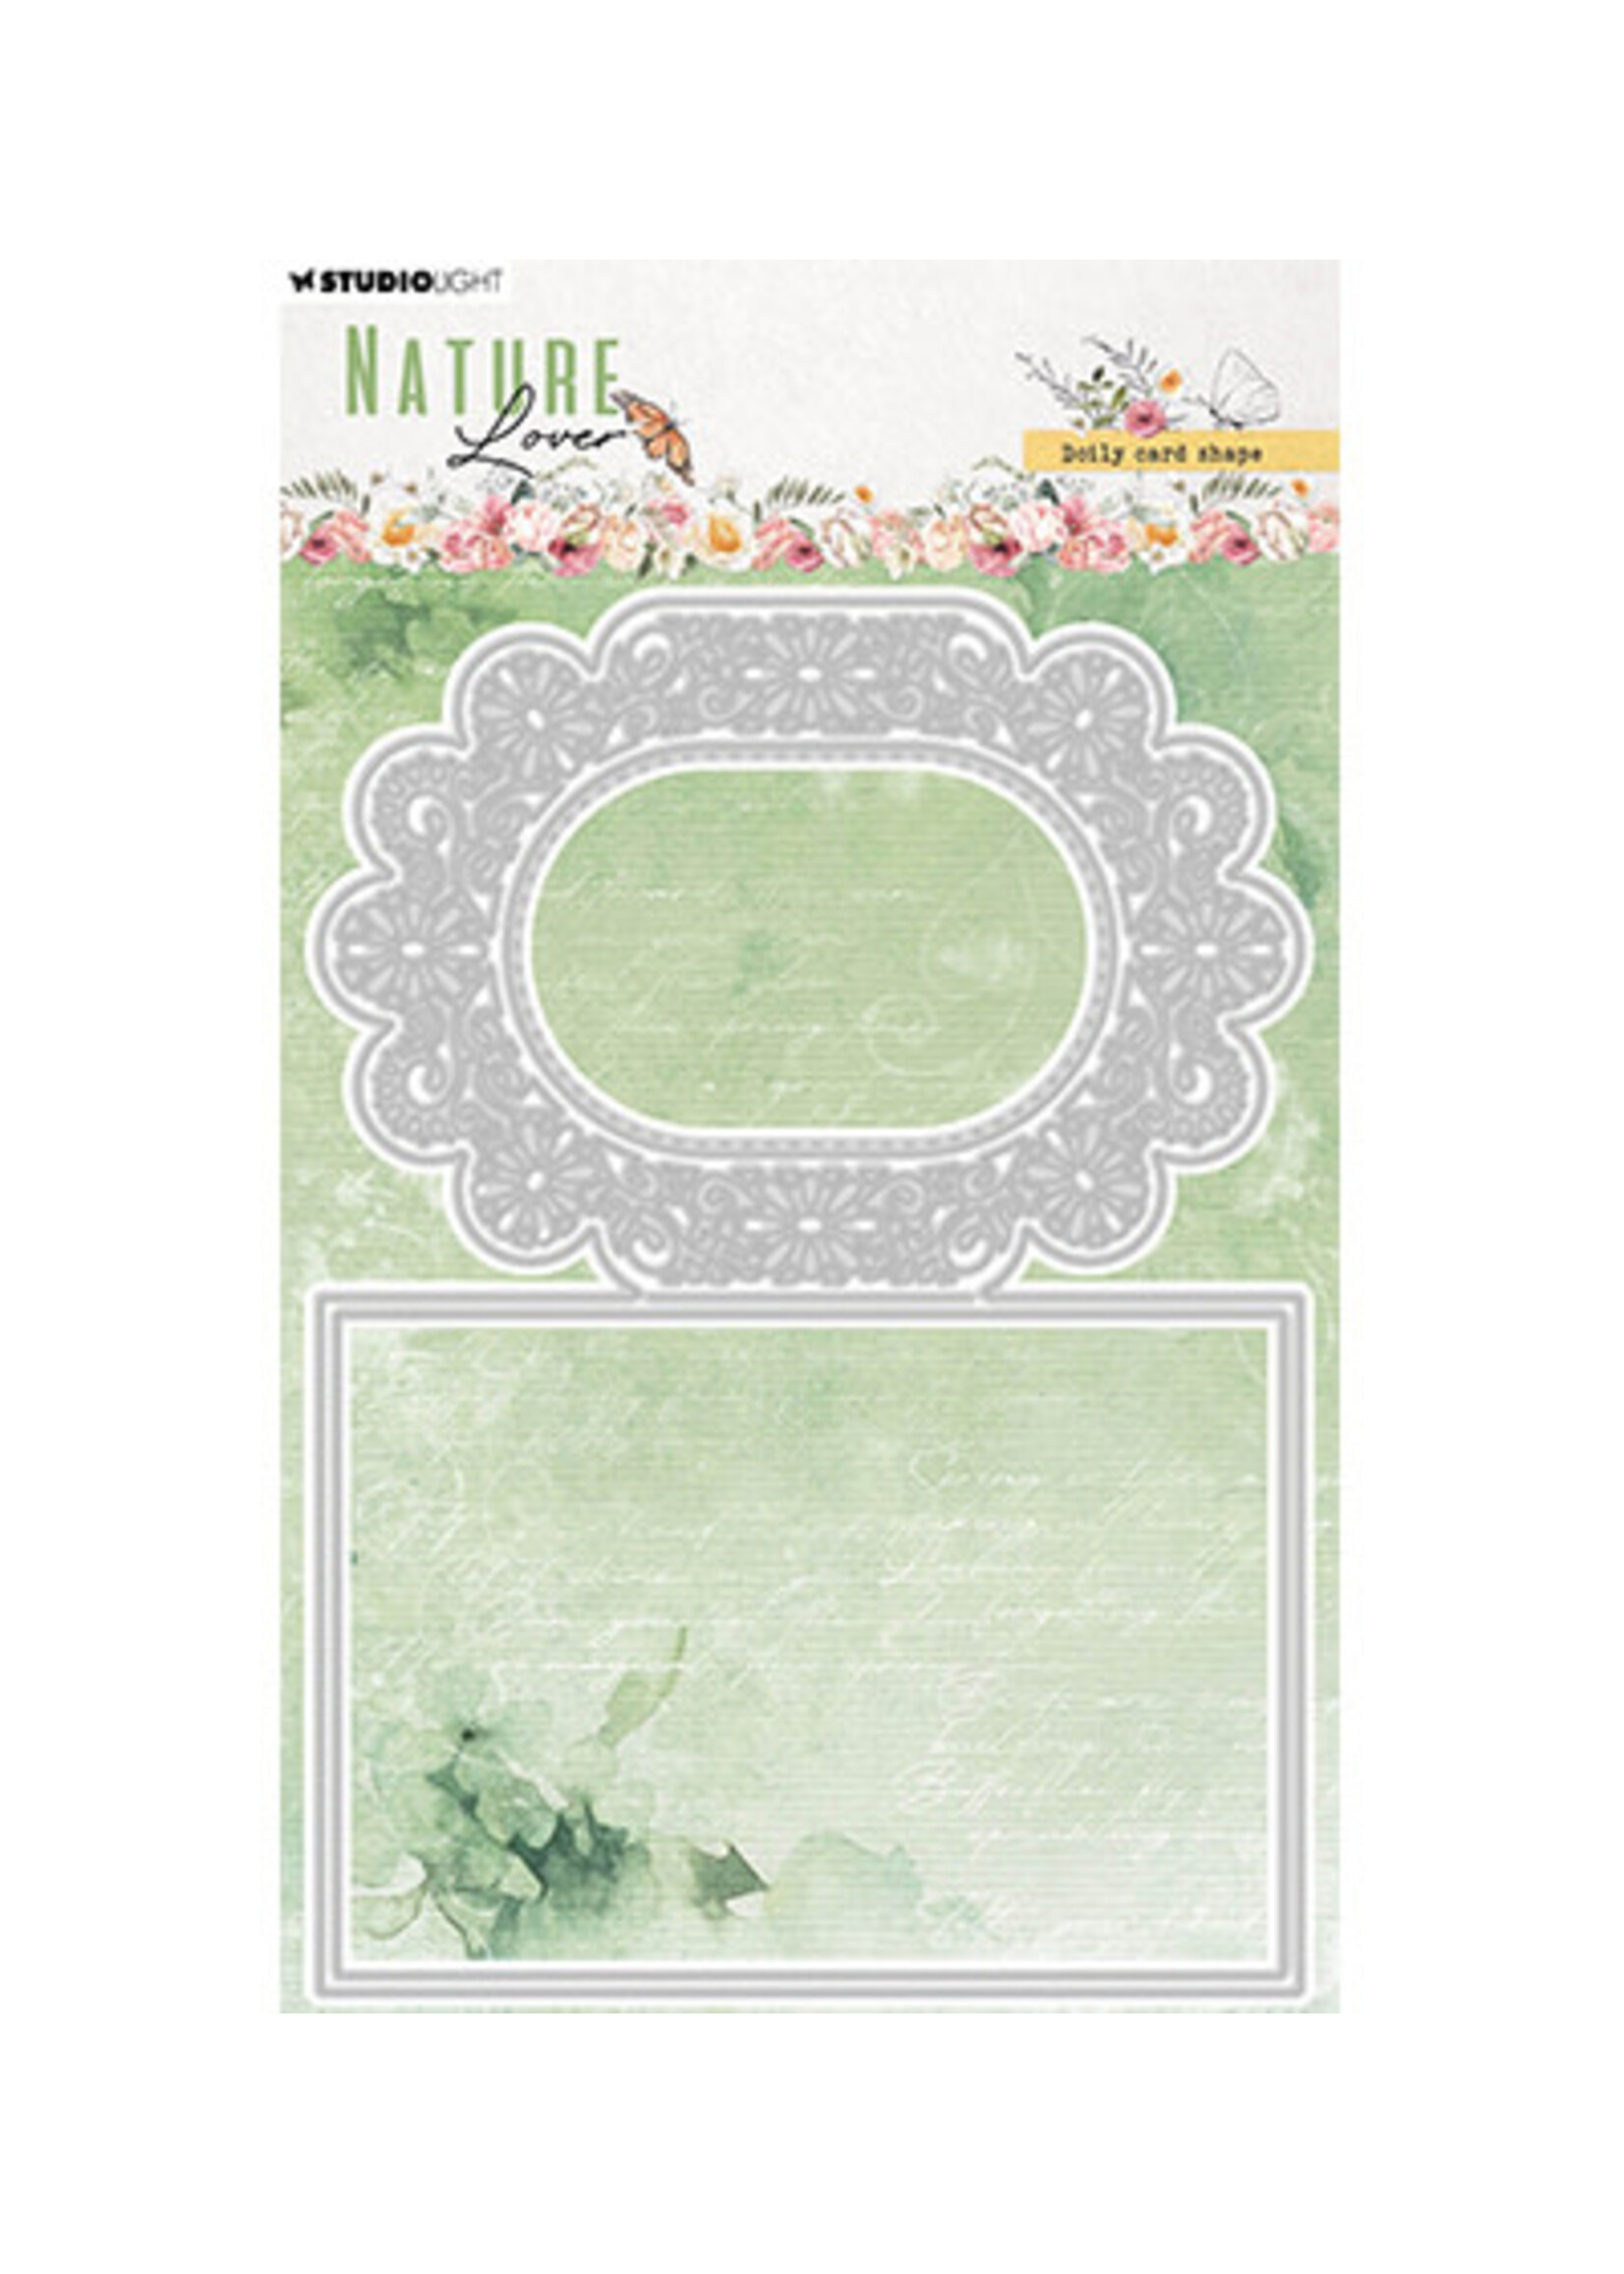 Studio Light SL-NL-CD773 - Doily card shape Nature Lover nr.773